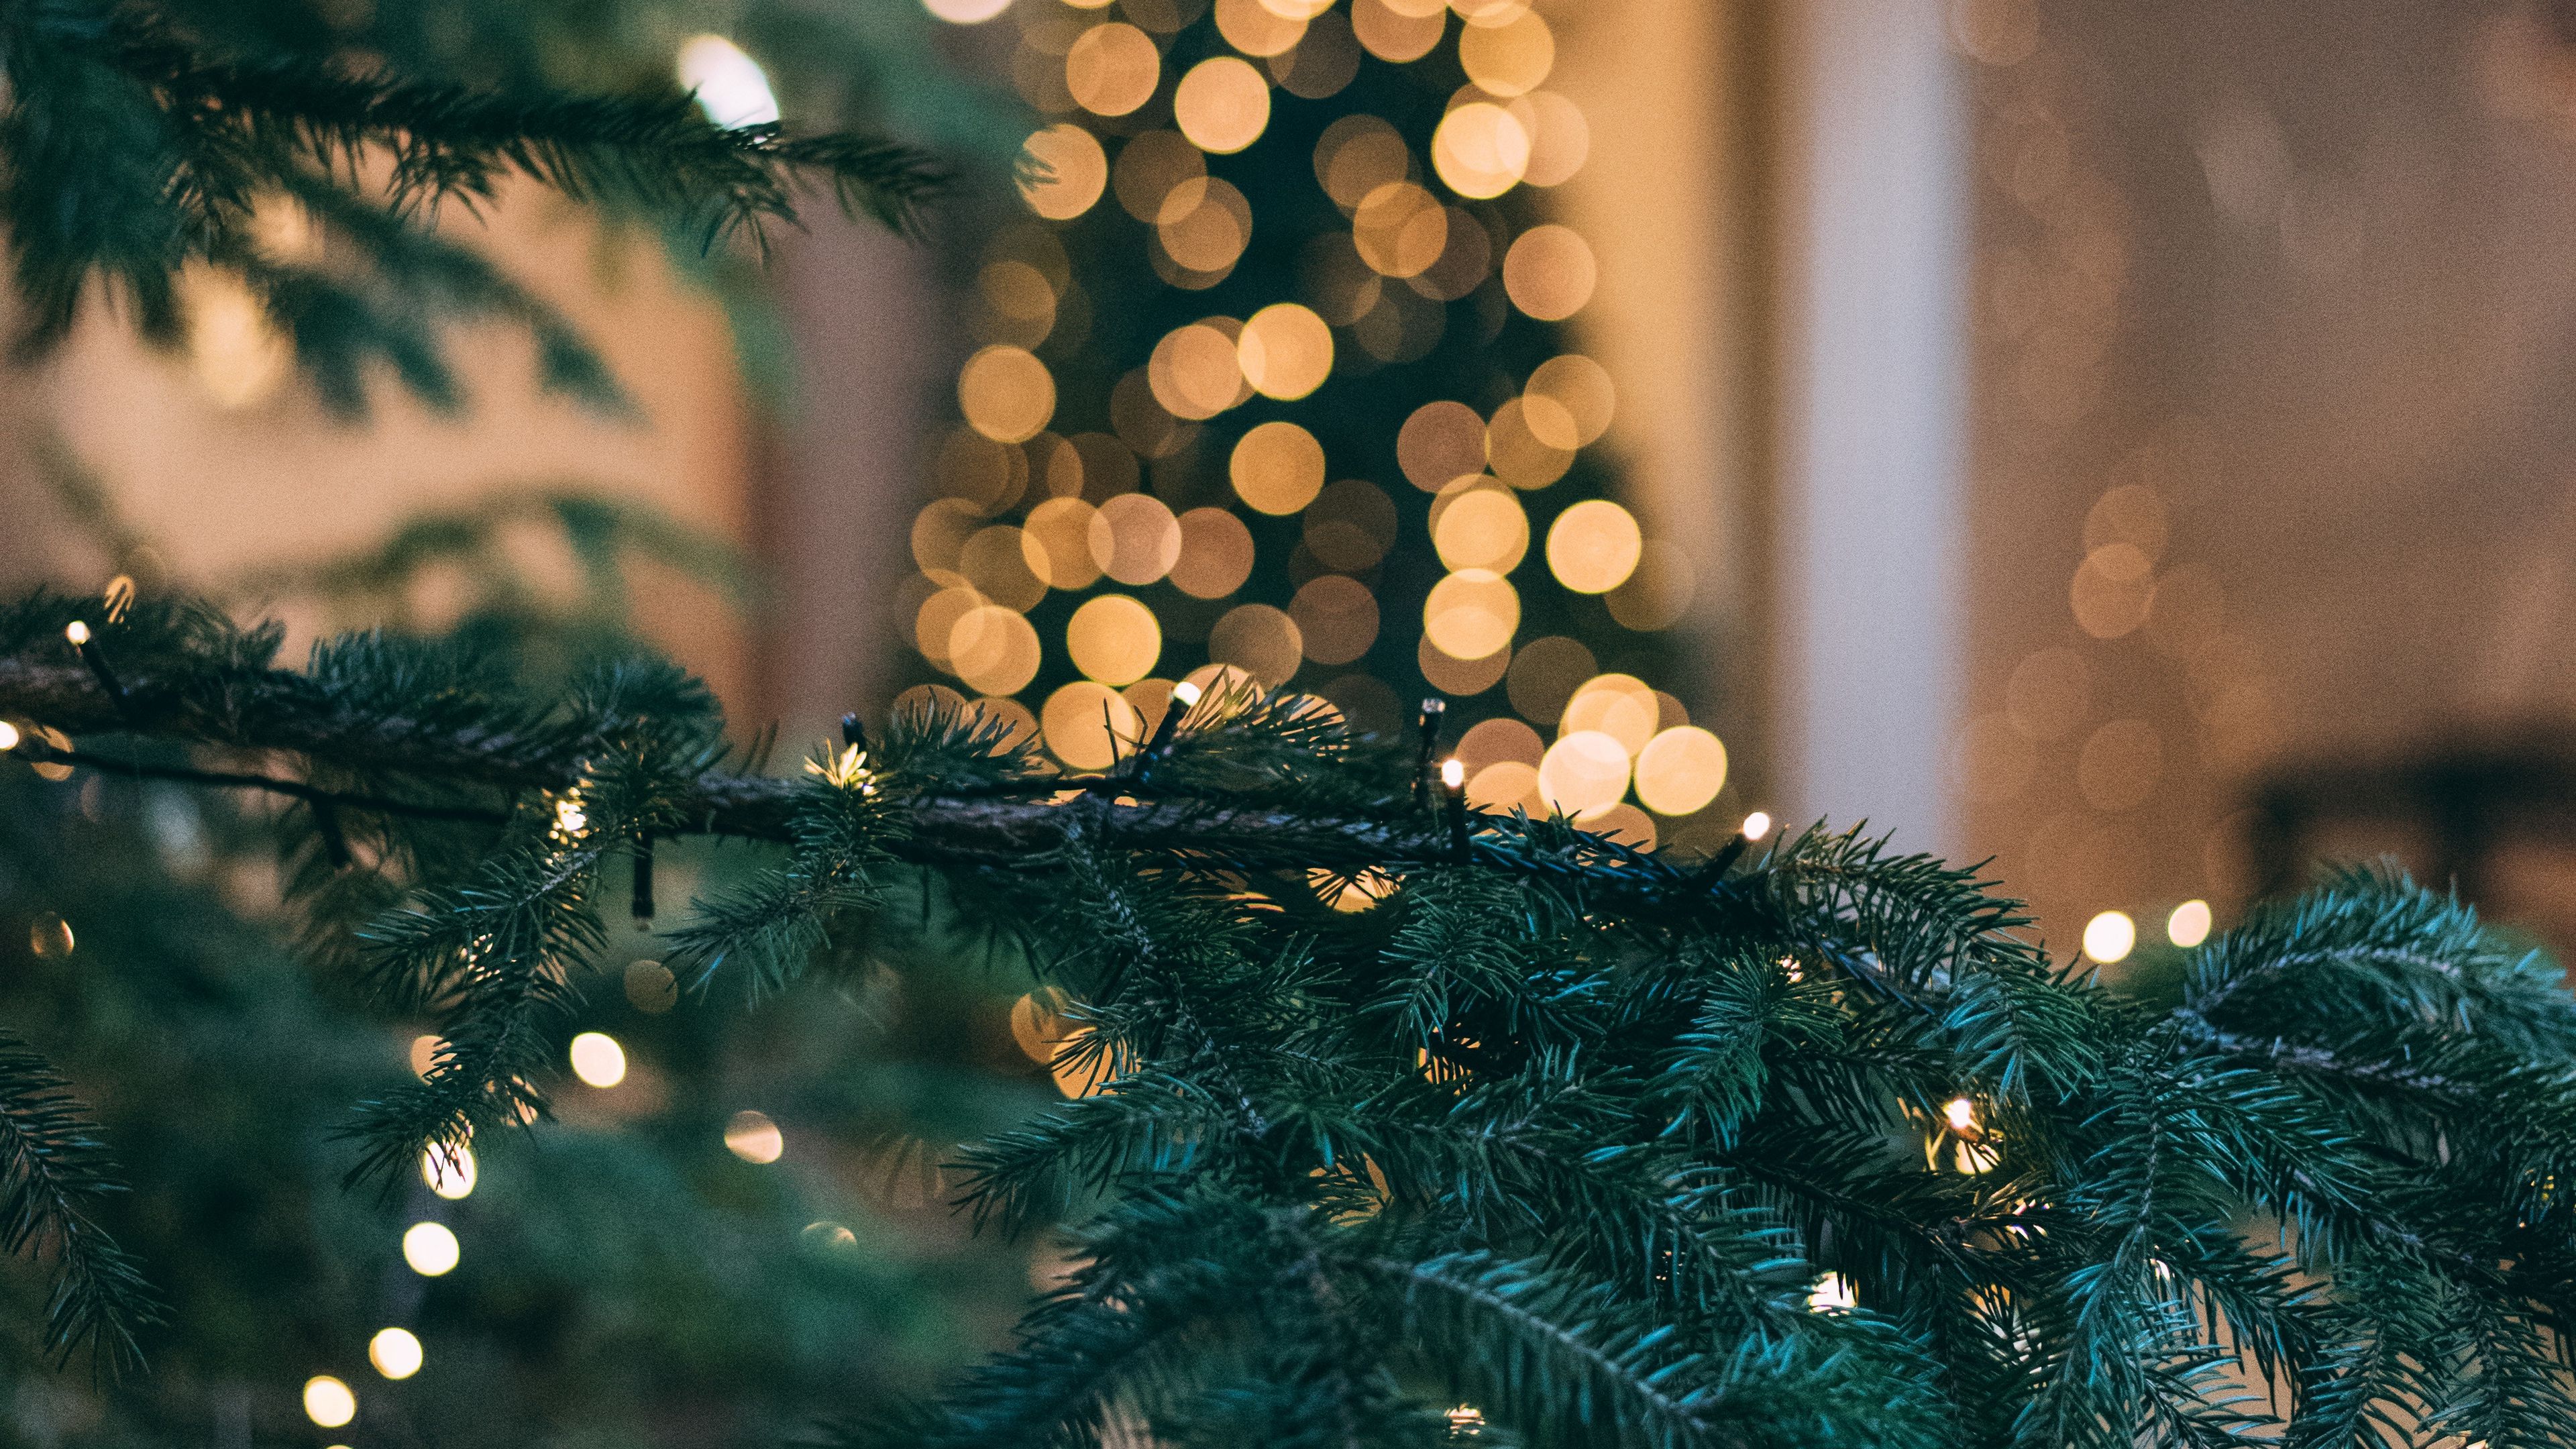 Hình nền cây thông Giáng sinh 4K: Không gian Giáng sinh sẽ trở nên ấm áp với hình nền cây thông Giáng sinh 4K độc đáo. Sắc màu tươi sáng, hoa văn độc đáo cùng với hiệu ứng độc đáo sẽ mang đến cho bạn một màn hình đầy cảm hứng và tươi mới cho mùa Giáng sinh.